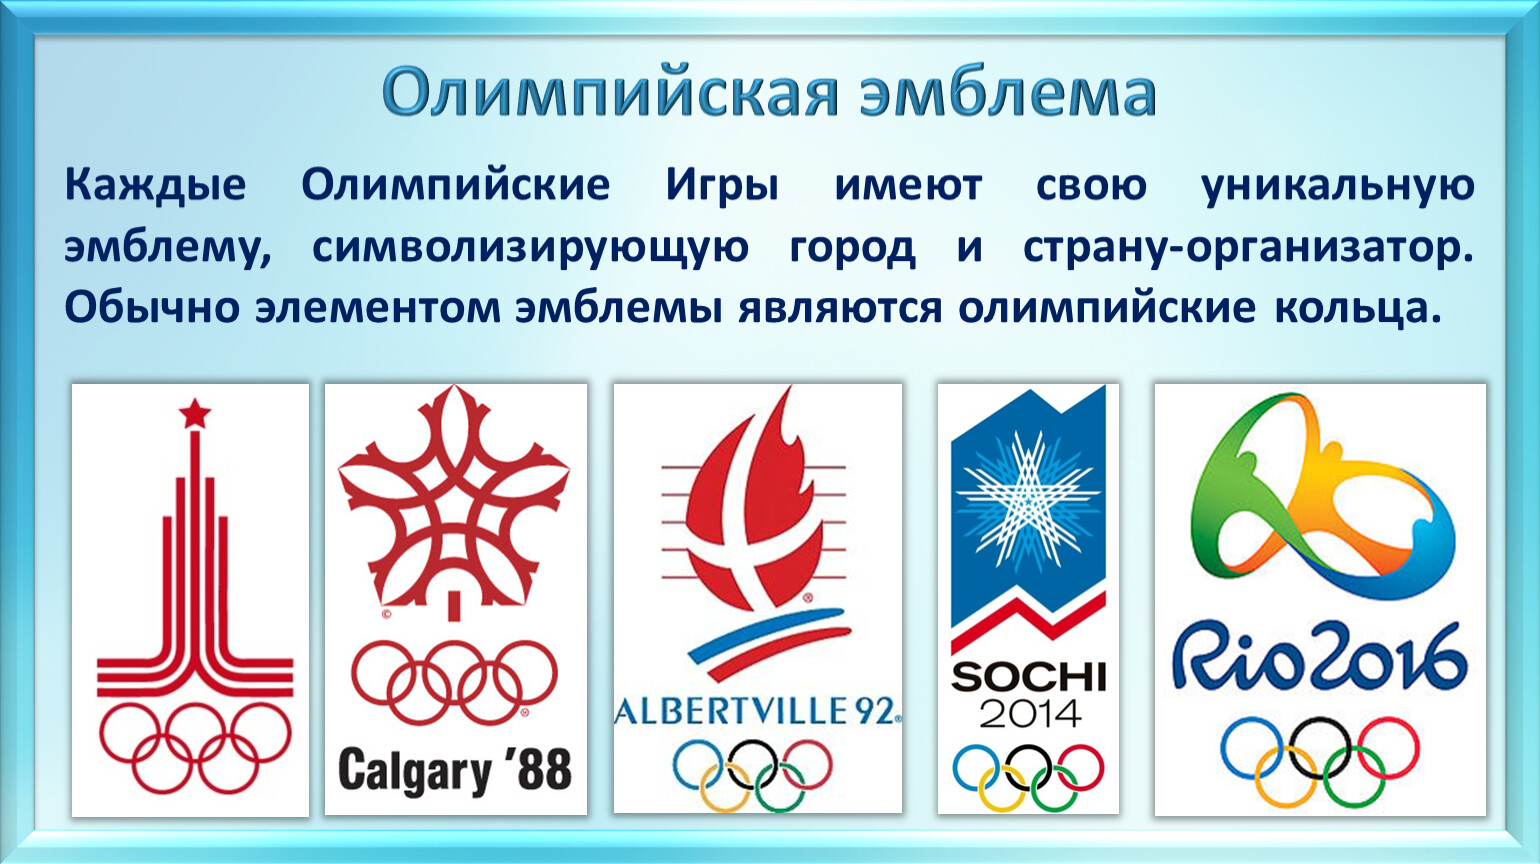 Эмблема что это. Олимпийская эмблема. Олимпийский символ. Символ современных Олимпийских игр.